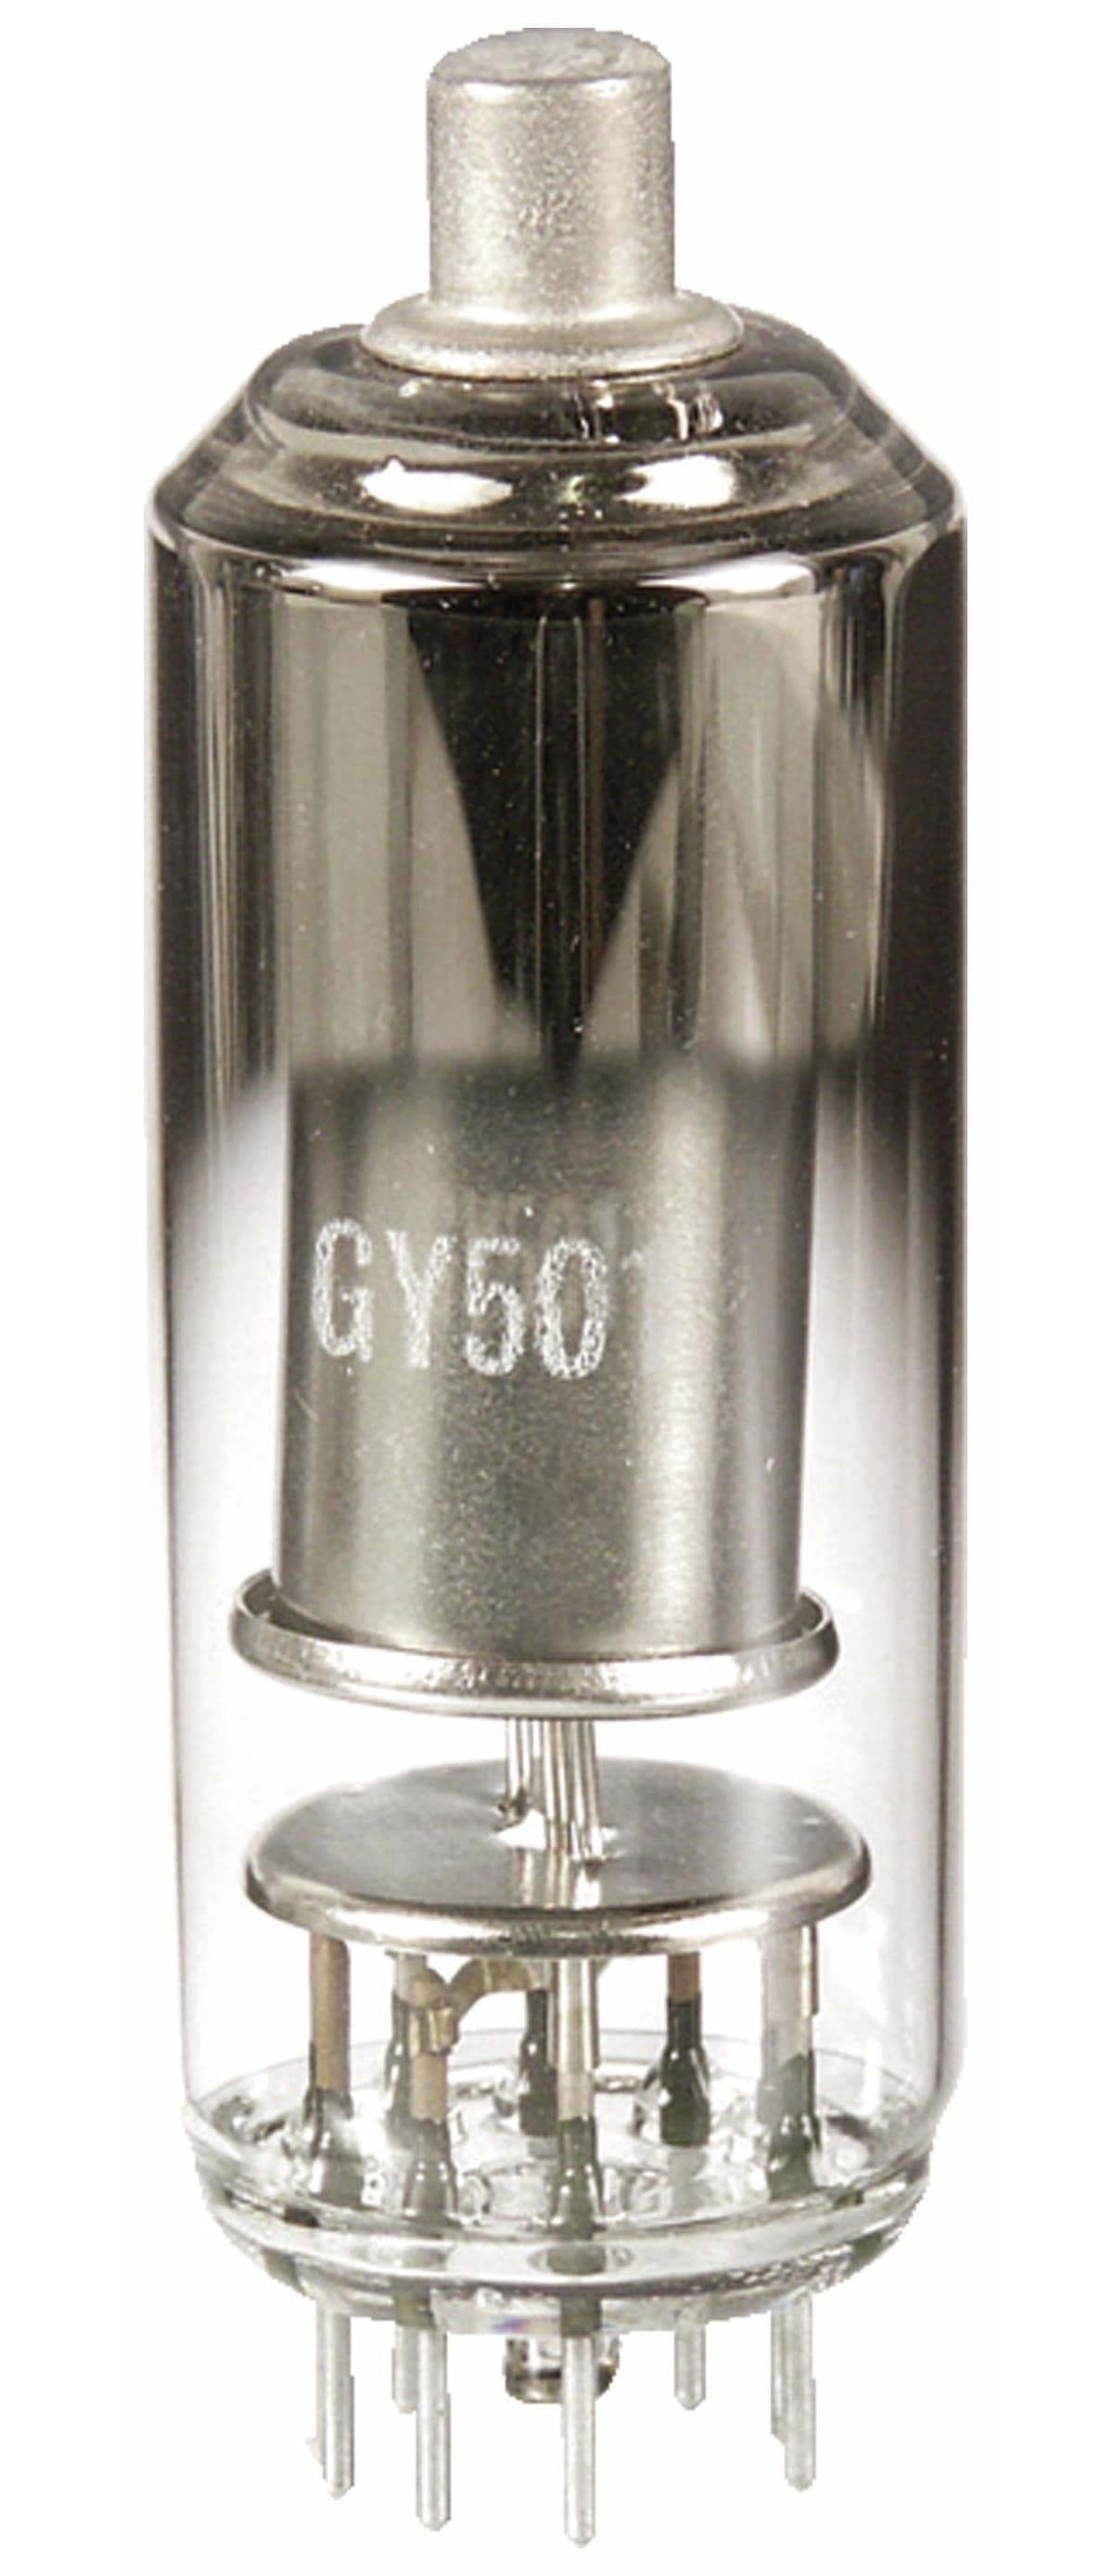 Röhre GY501